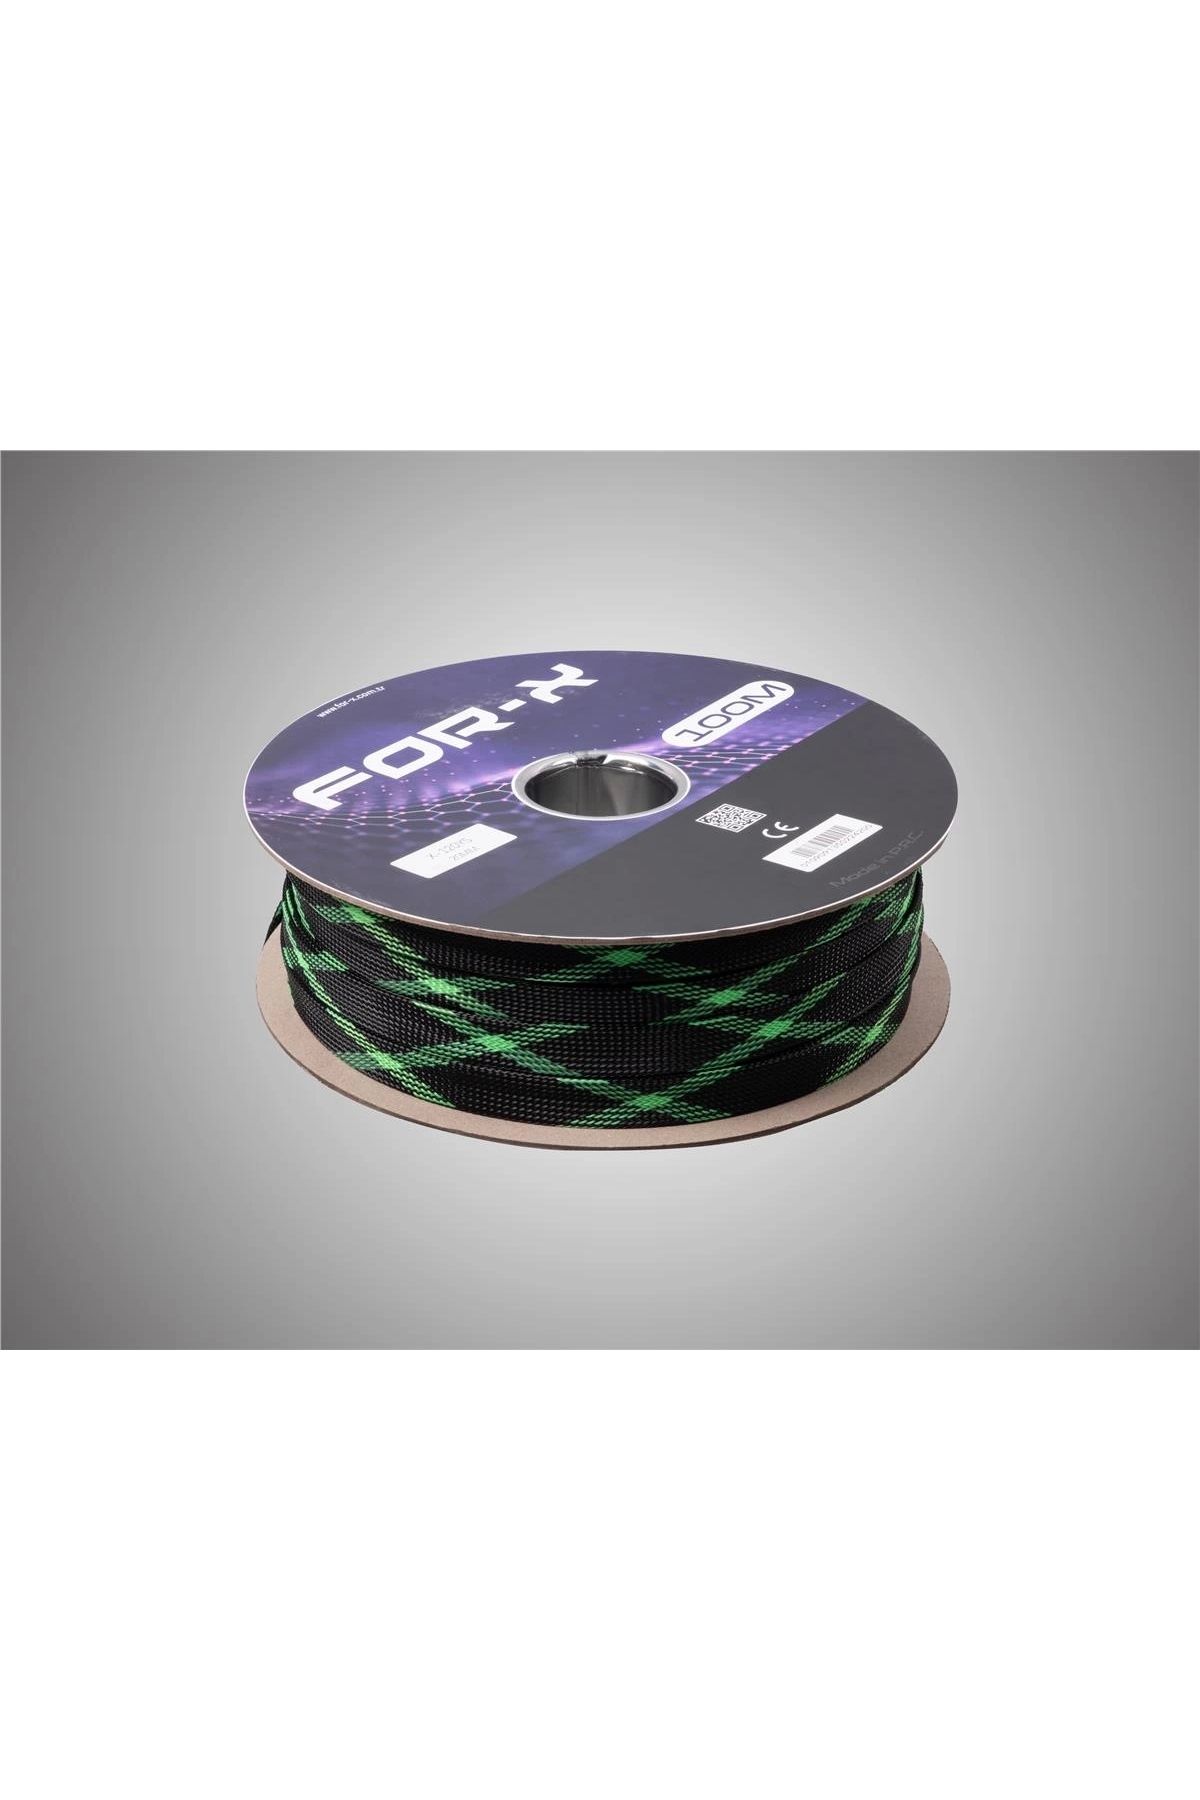 For-X Kablo Çorabı 20mm - 20mm Yeşil Siyah Amfi Kablo Toplayıcı - 1 Metre